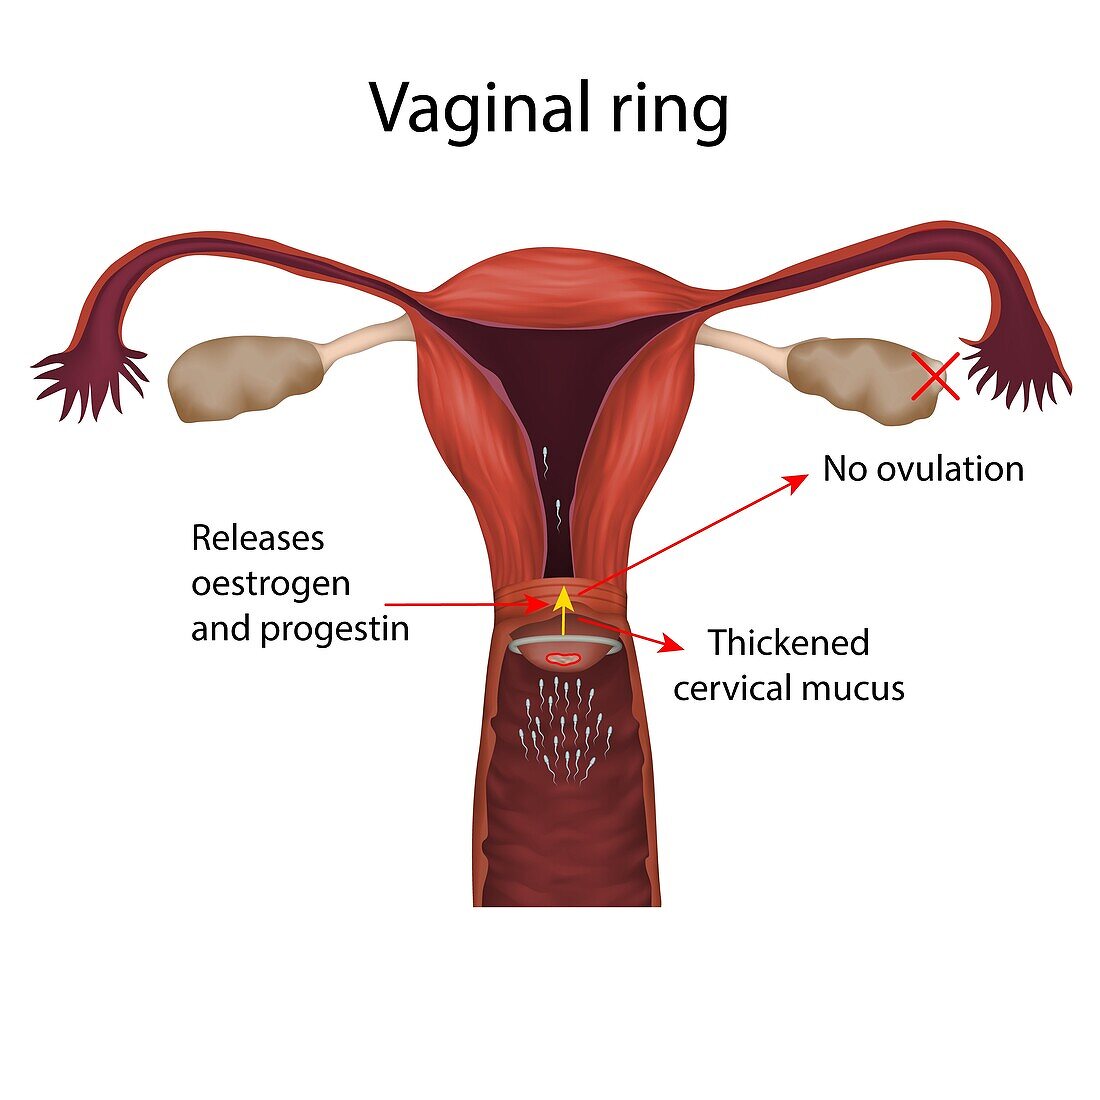 Vaginal ring, illustration